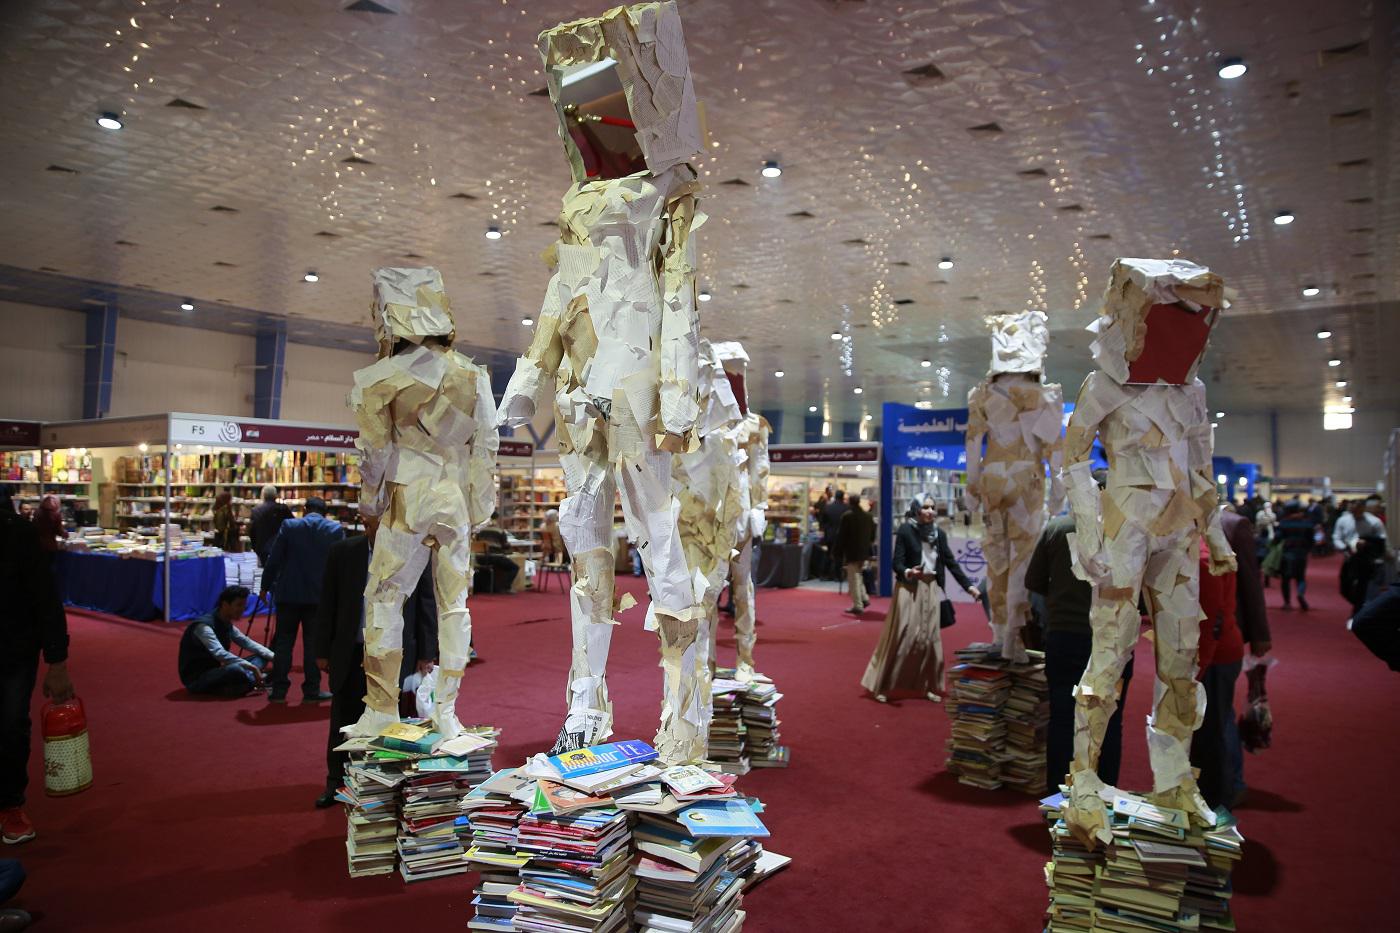 عمل فني جسد فيه التشكيلي العراقي ستار عواد مجموعة من الكتب الورقية على هيئة كتلة بشرية